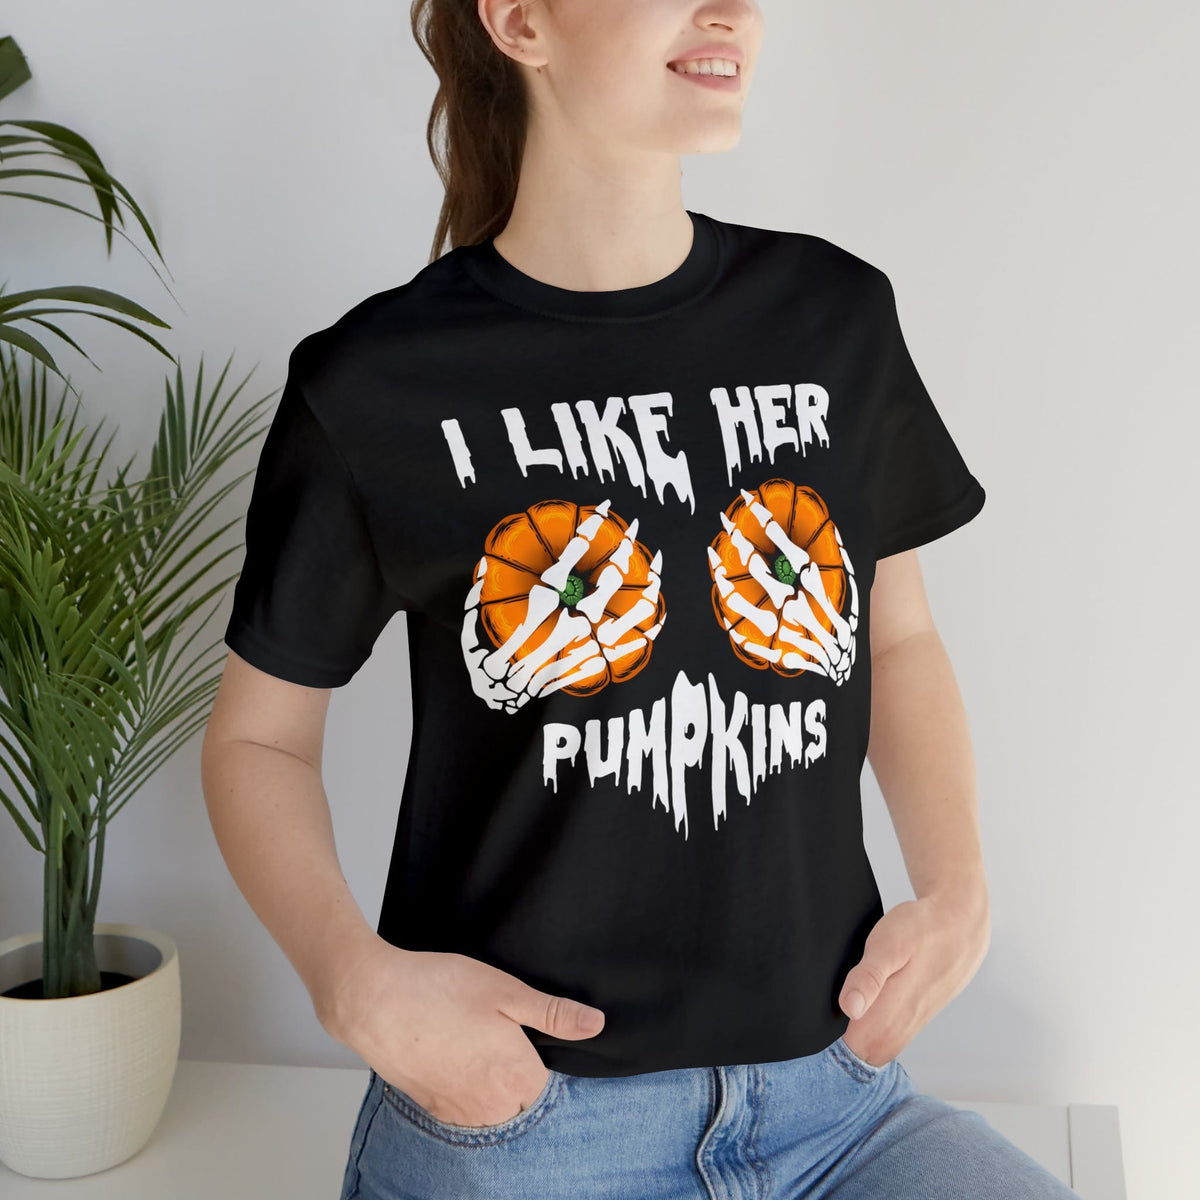 I Like her pumpkins